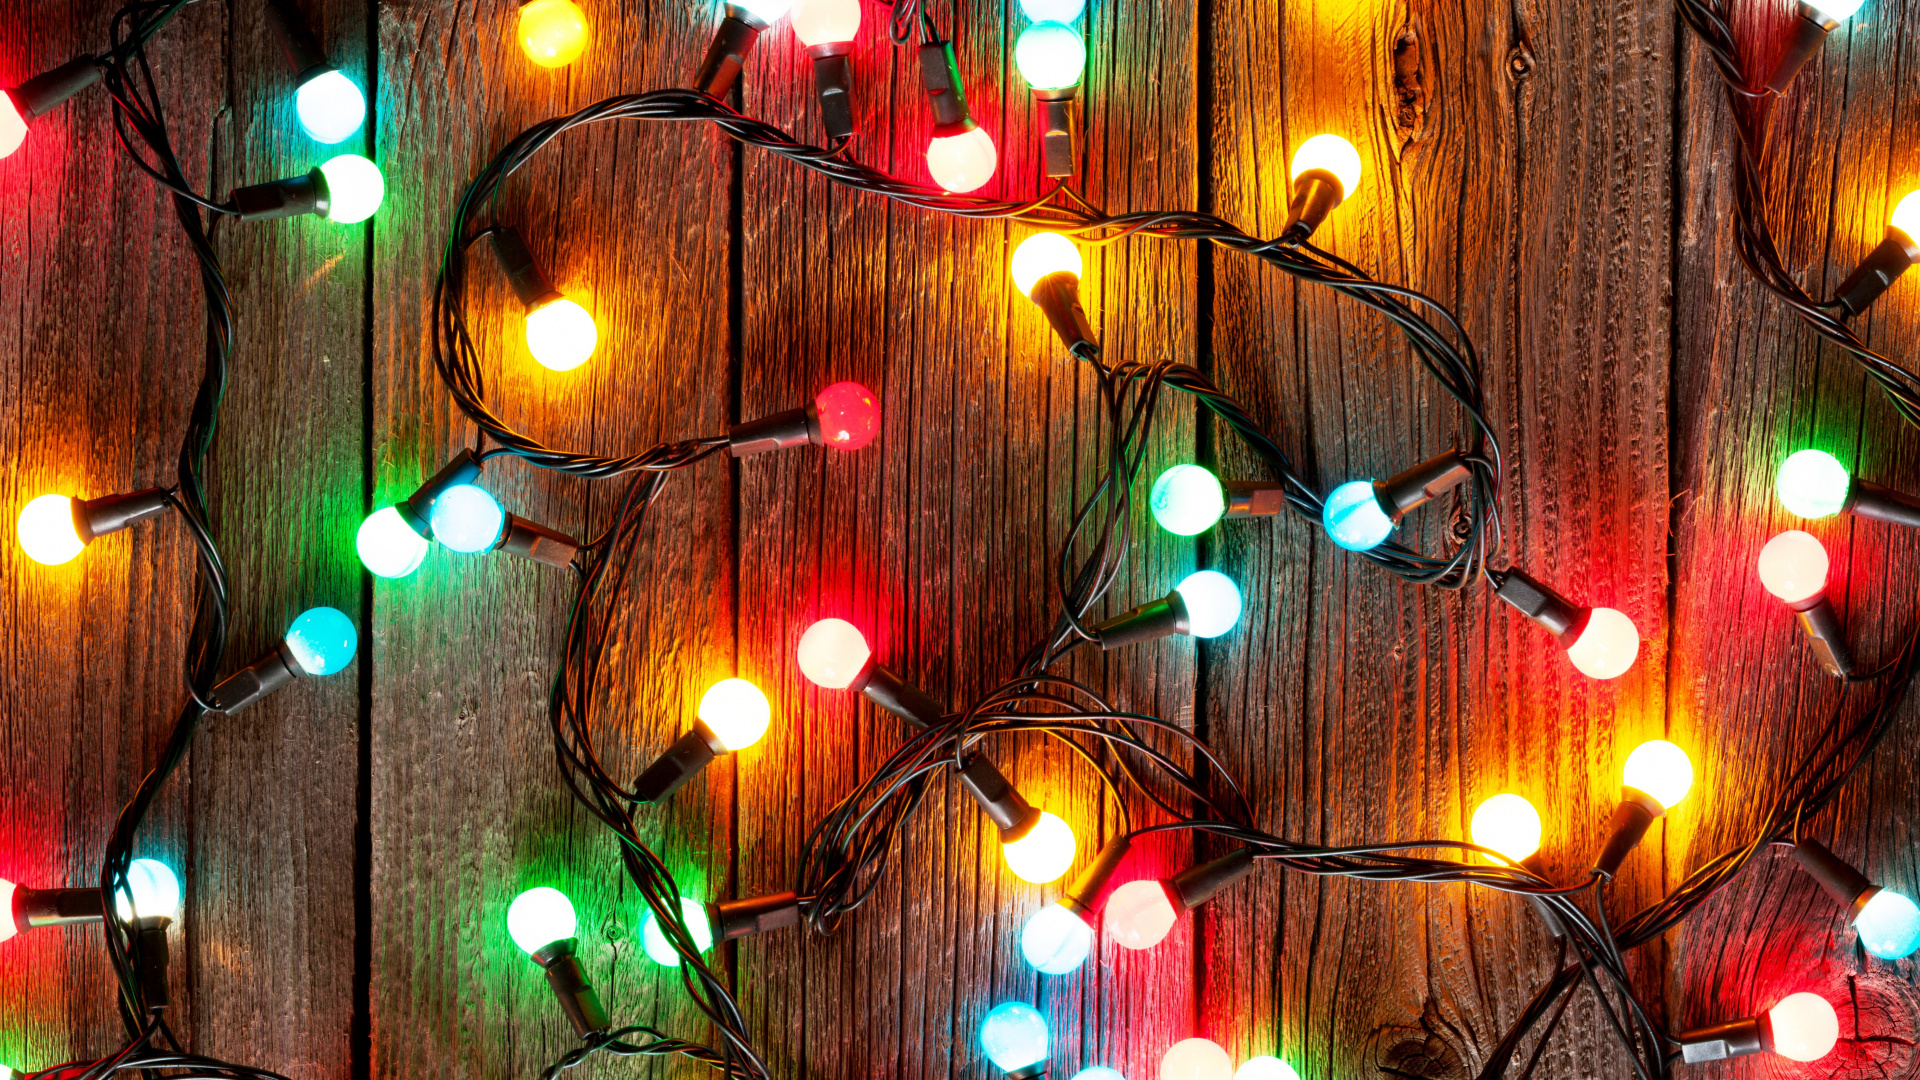 圣诞彩灯, 圣诞节那天, 假日, 圣诞节, 圣诞装饰 壁纸 1920x1080 允许